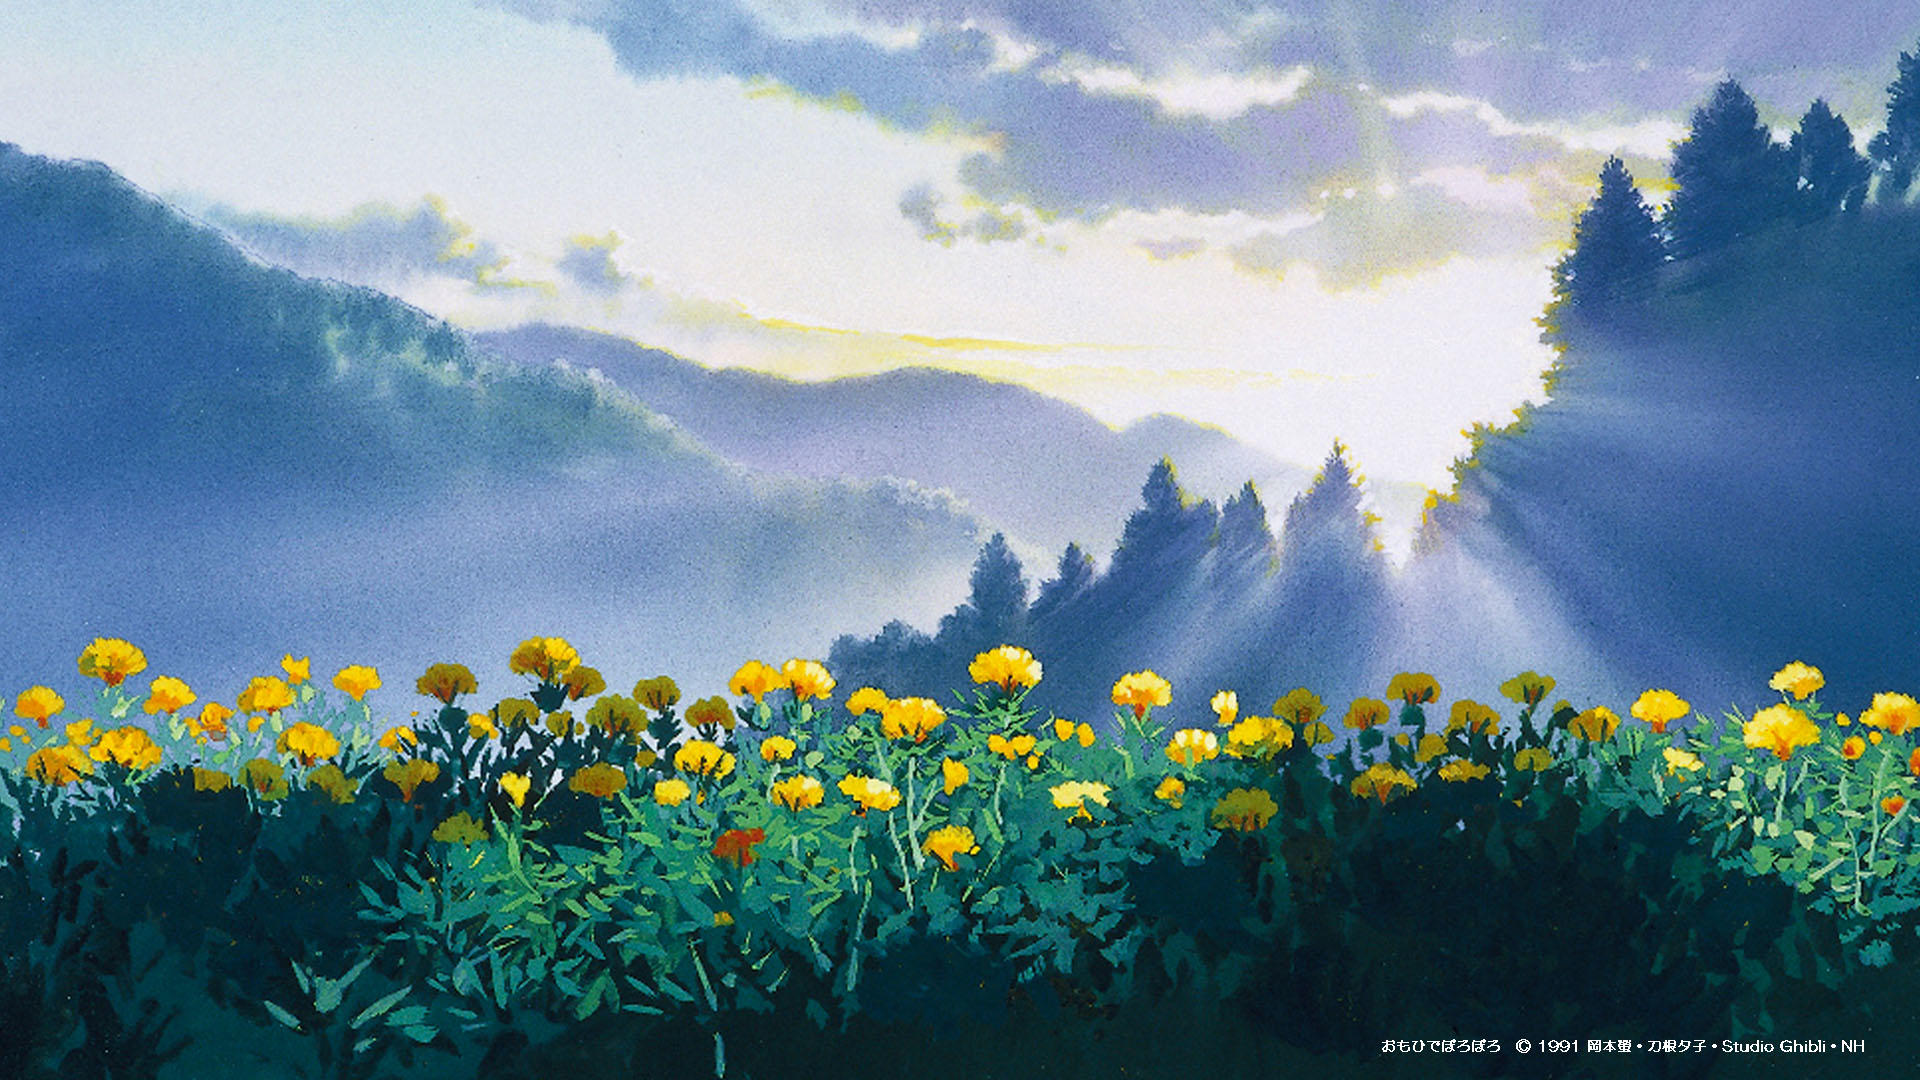 Studio Ghibli là một thế giới đầy màu sắc, huyền bí và đầy cảm hứng. Khám phá thế giới phim hoạt hình độc đáo này và tận hưởng nét đẹp của thiết kế nghệ thuật đặc trưng với những hình ảnh thú vị và đầy cảm xúc.